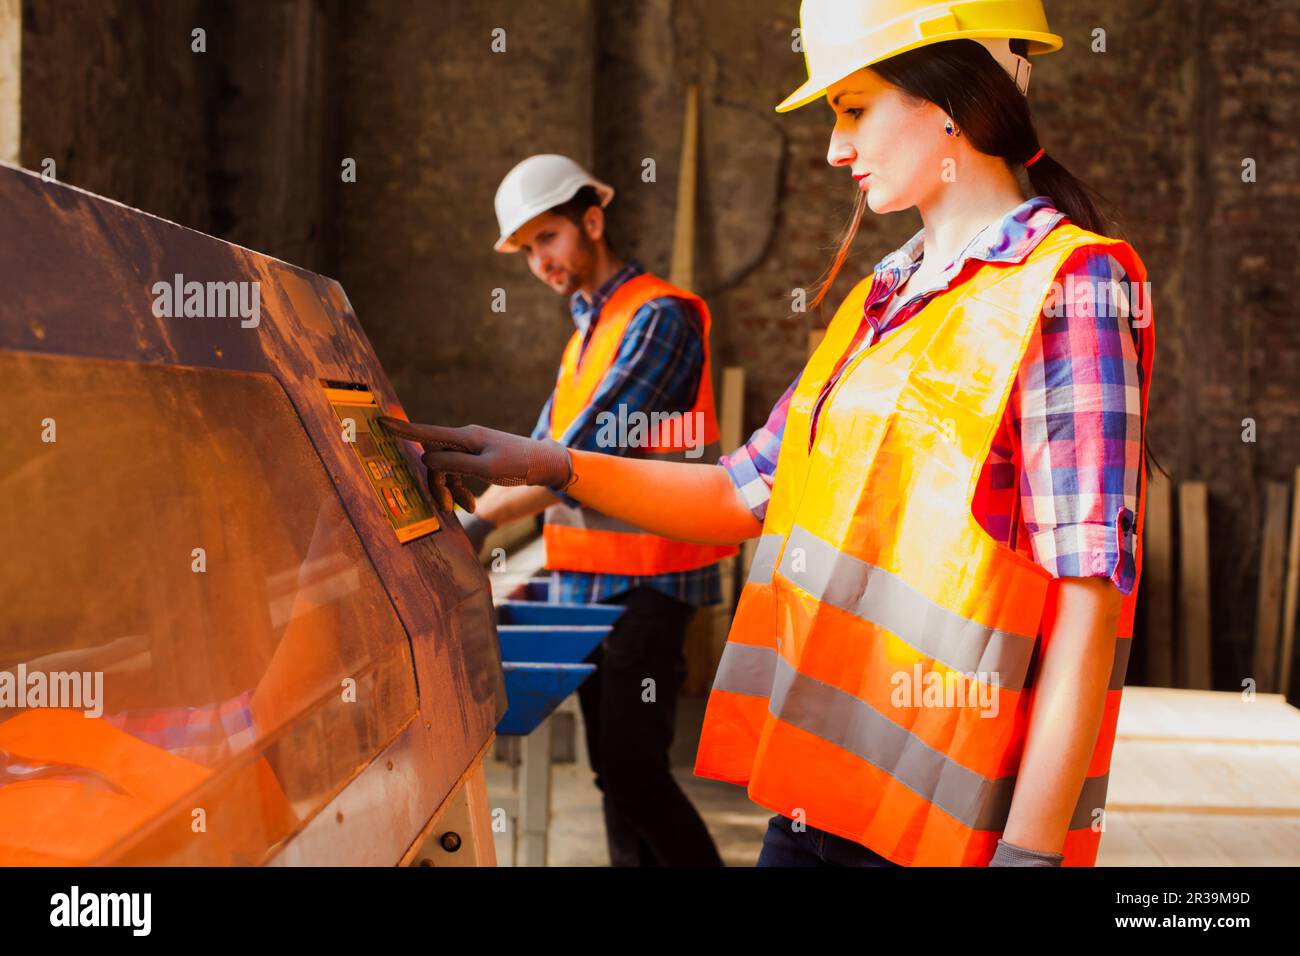 Donna di lavoro in casco protetto e vestiti premendo il pulsante sulla macchina per la lavorazione del legno. Foto Stock